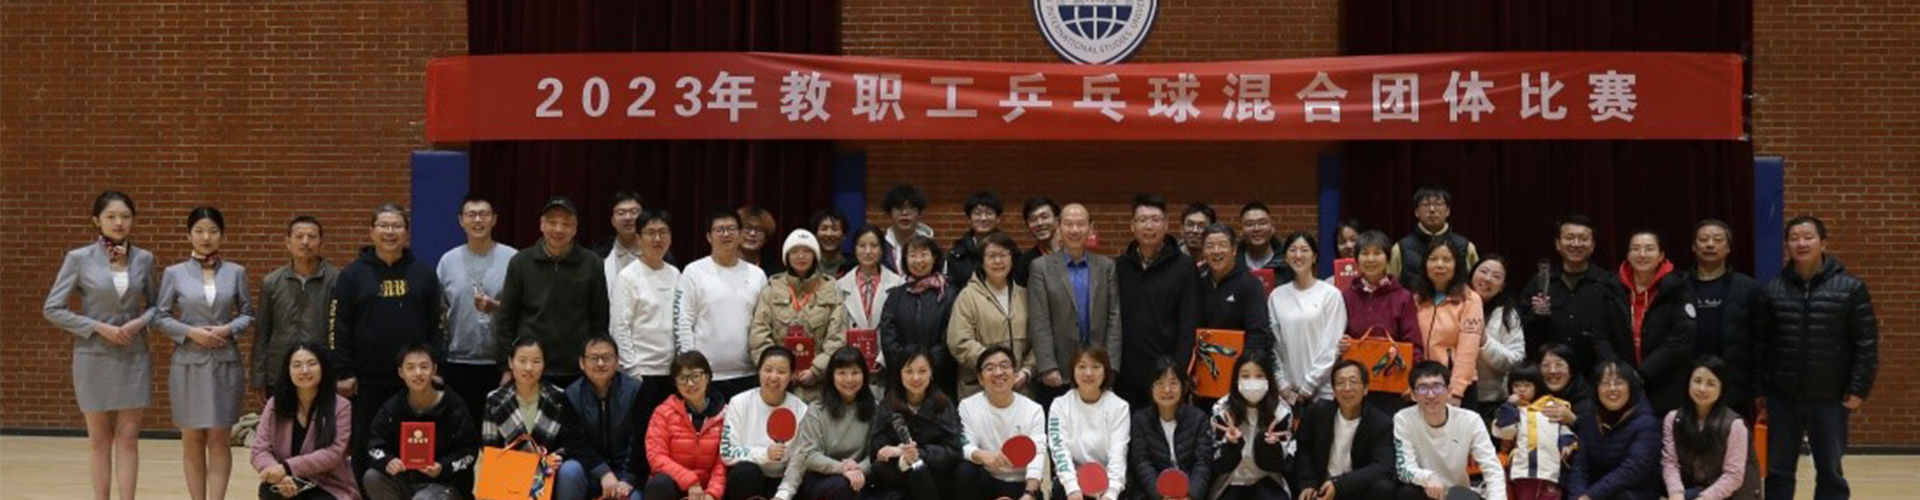 2023年教职工乒乓球混合团体比赛顺利举行